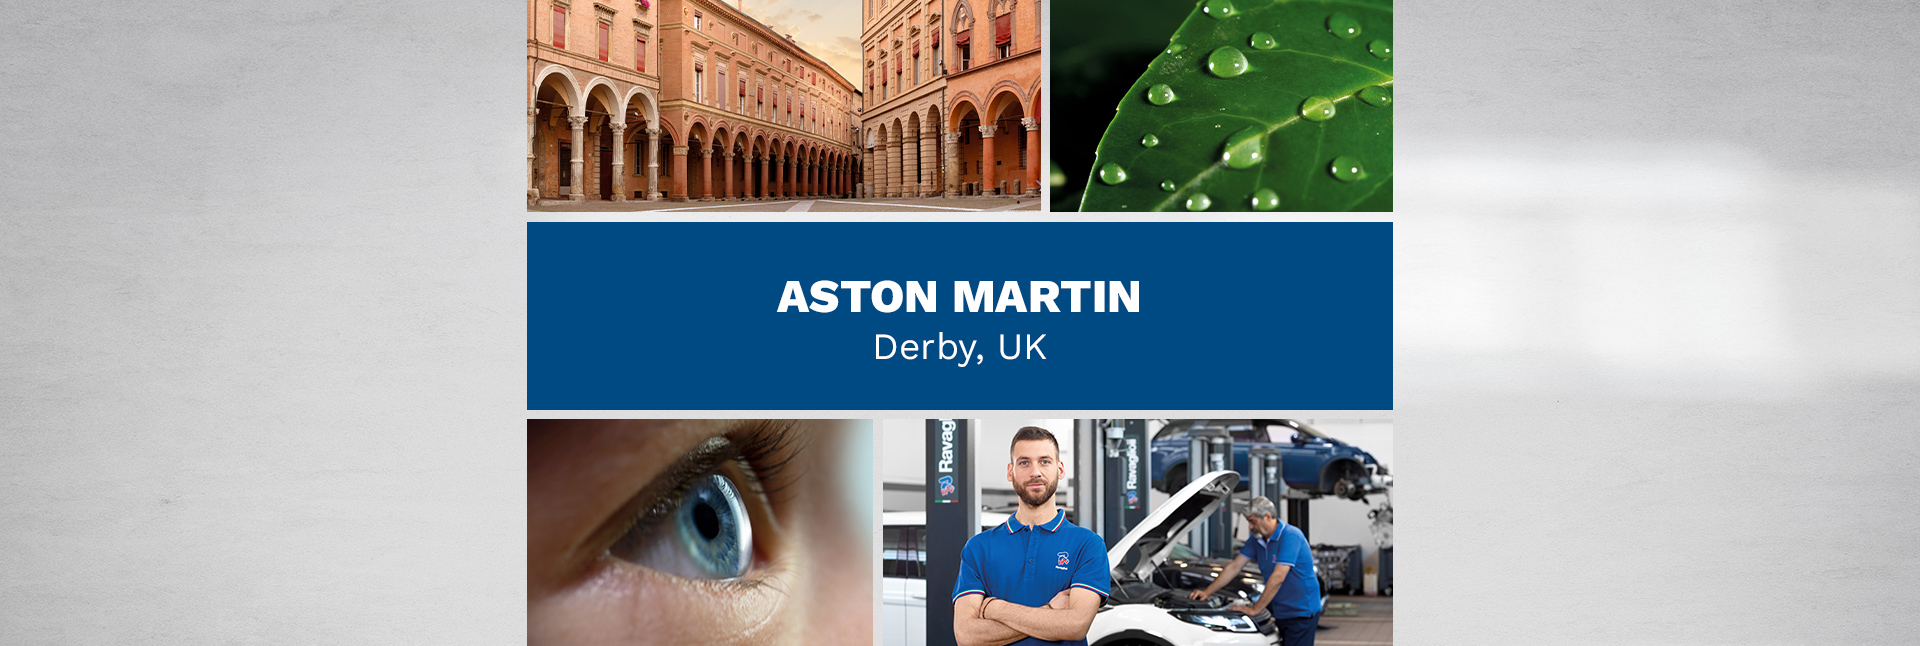 Aston Martin – Derby, UK